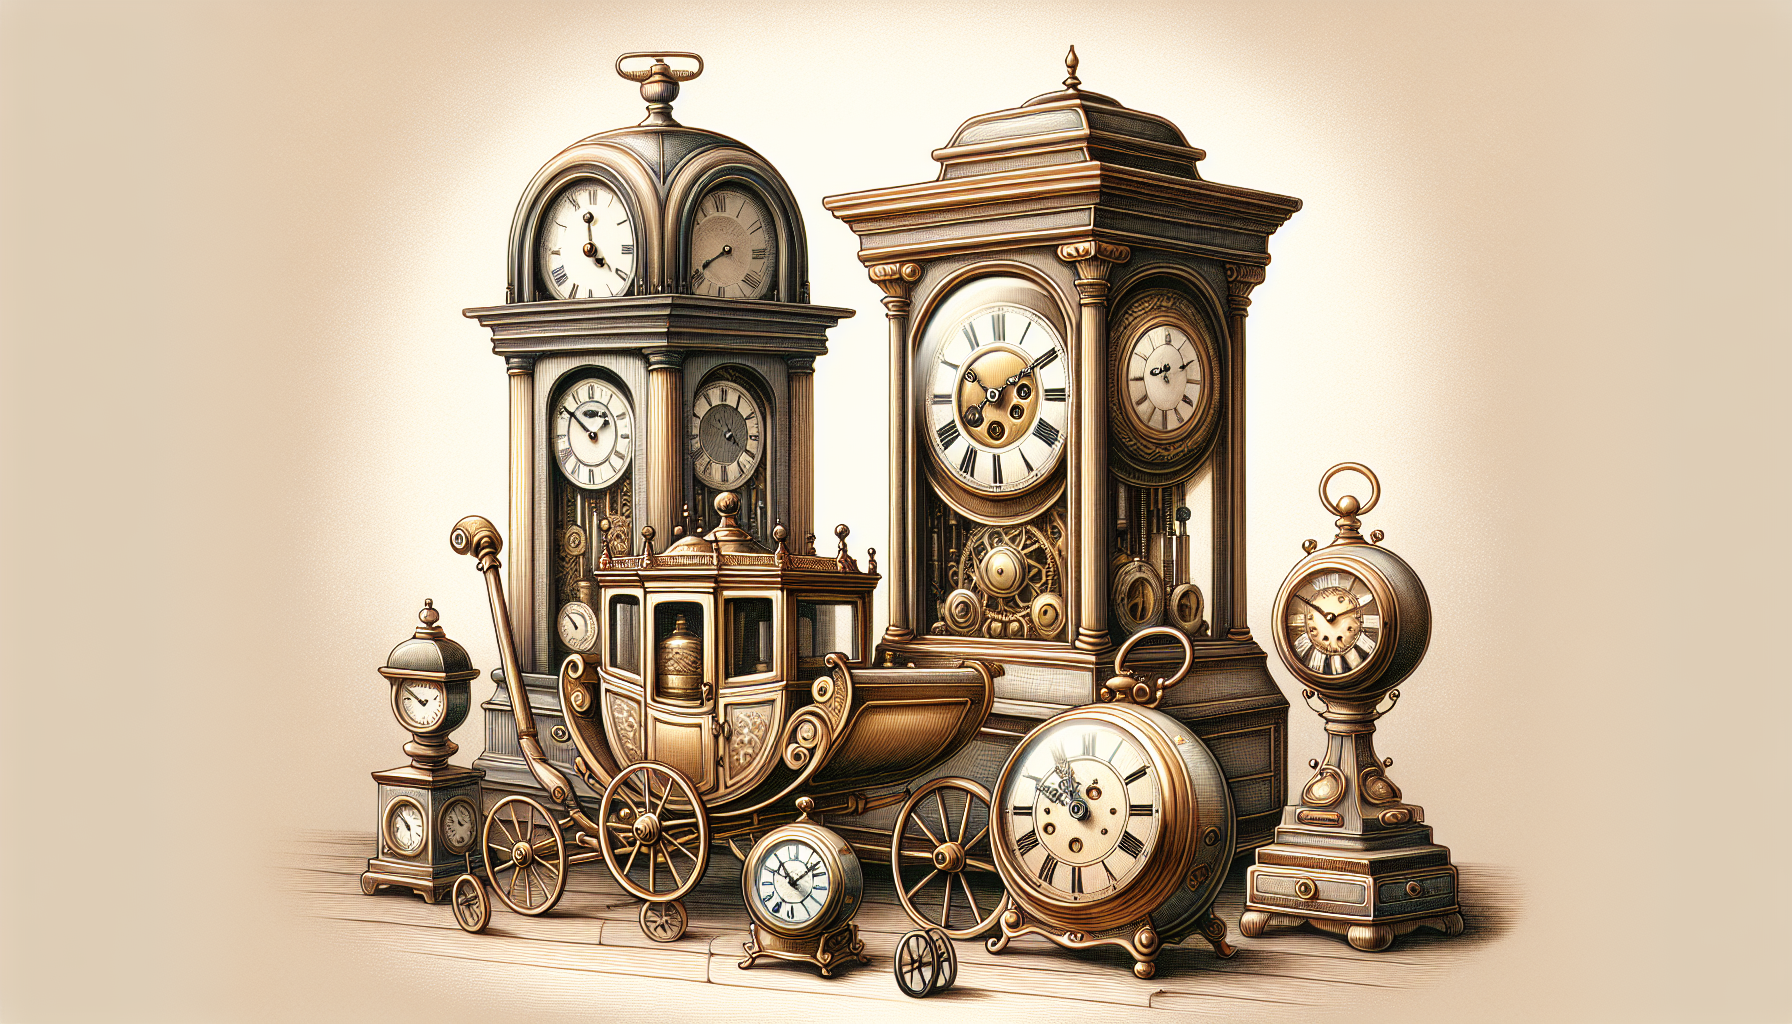 Unique designs of mantel clocks